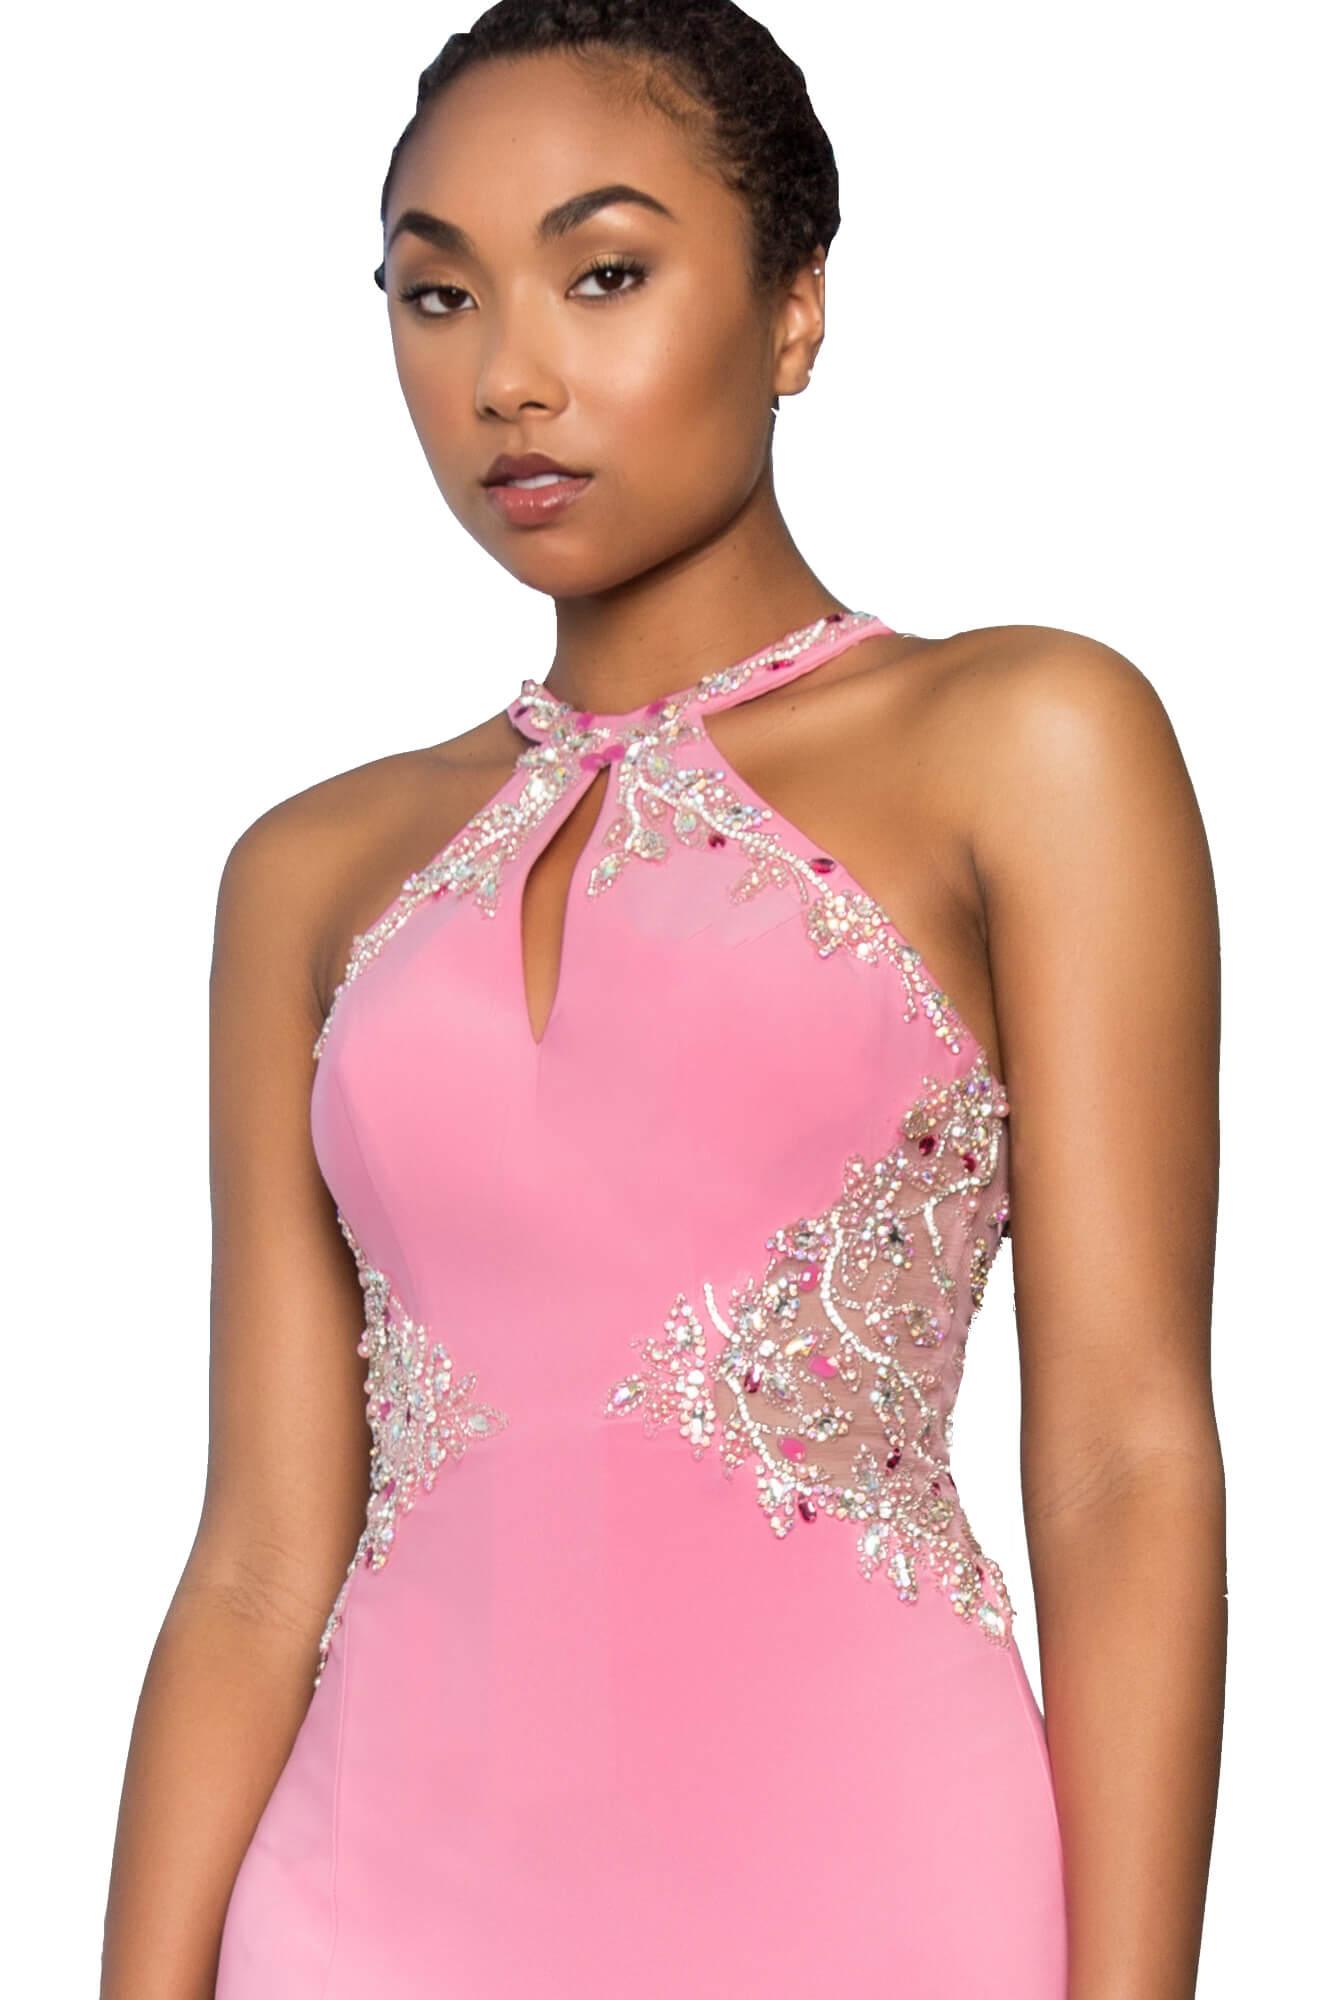 Prom Long Halter Evening Formal Gown with Side Slit - The Dress Outlet Elizabeth K